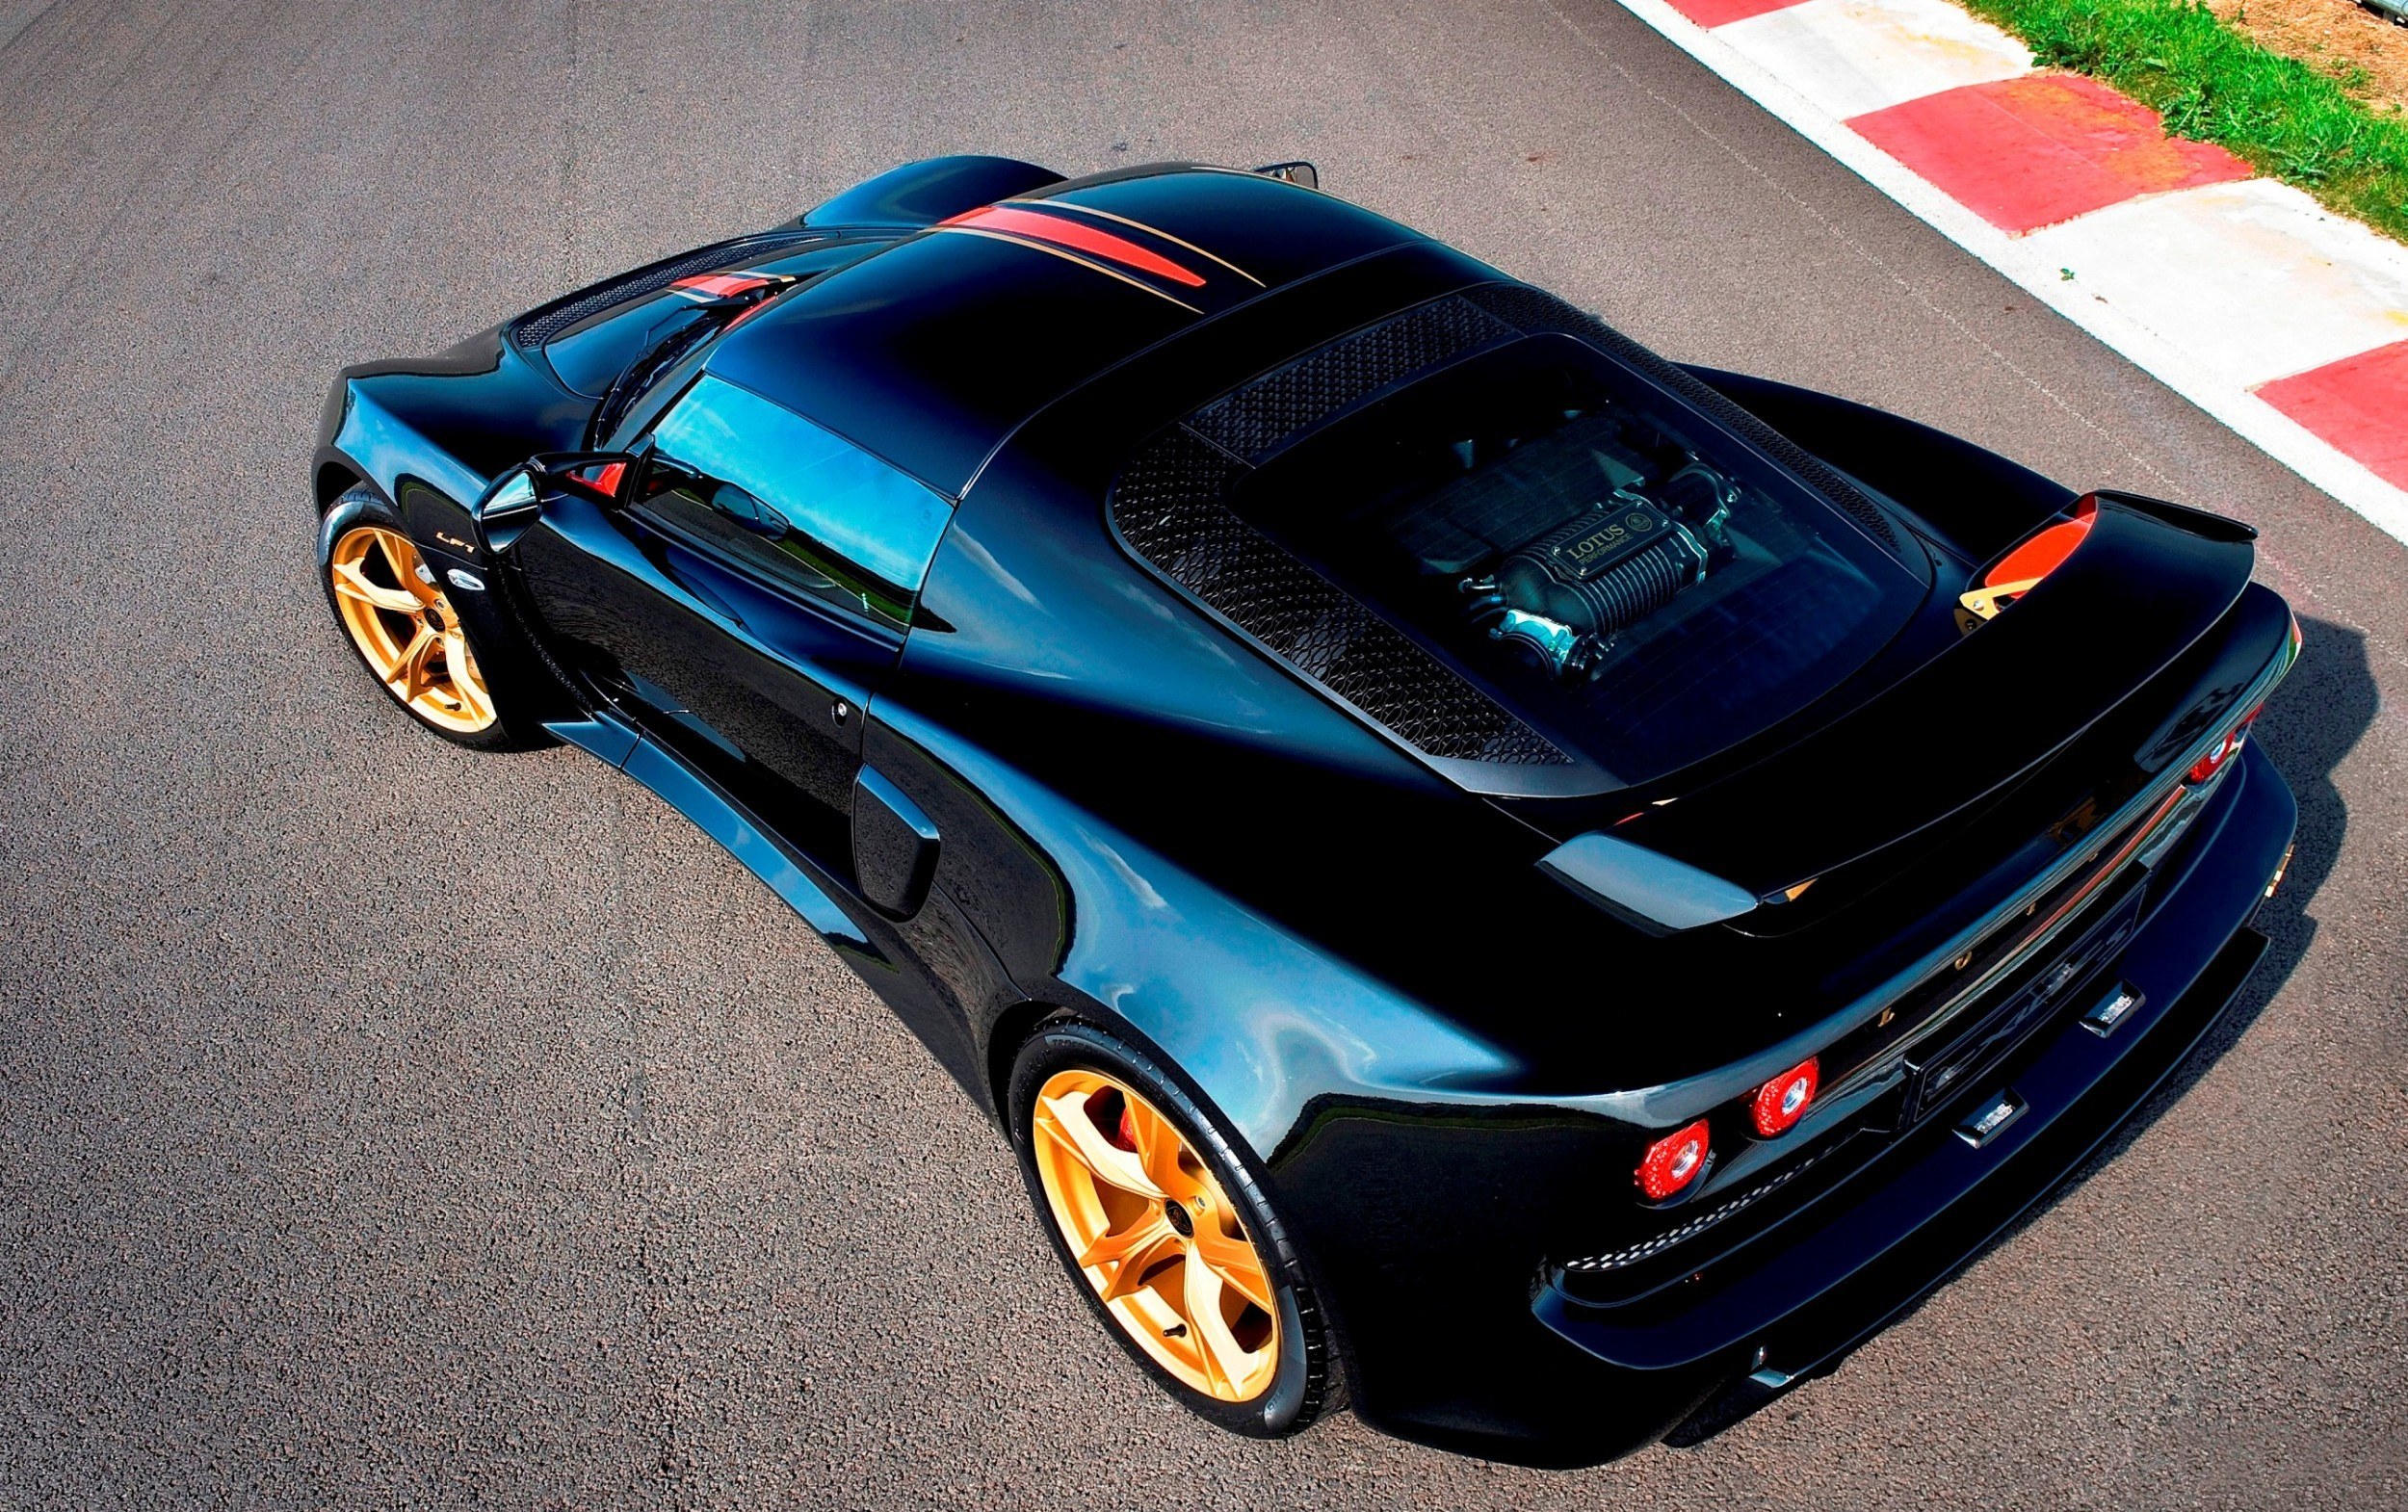 2014 Lotus Exige LF1